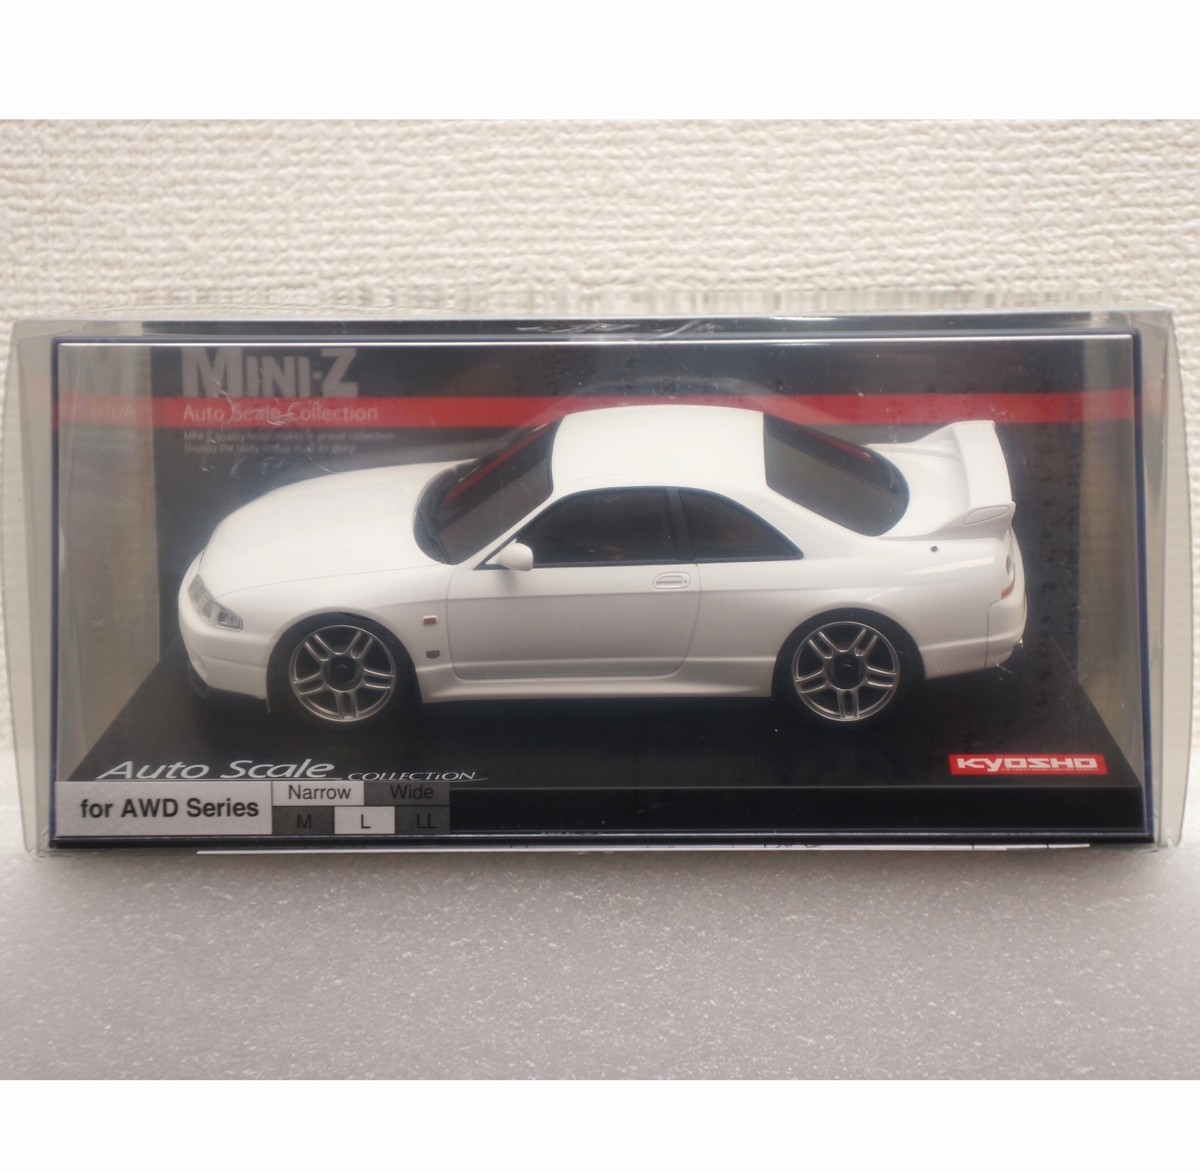 【送料込】京商 ミニッツ スカイライン GT-R Vスペック R33 ホワイト (関連 Kyosho SKYLINE AWD MINI-Z ASC オートスケールコレクション)2の画像1